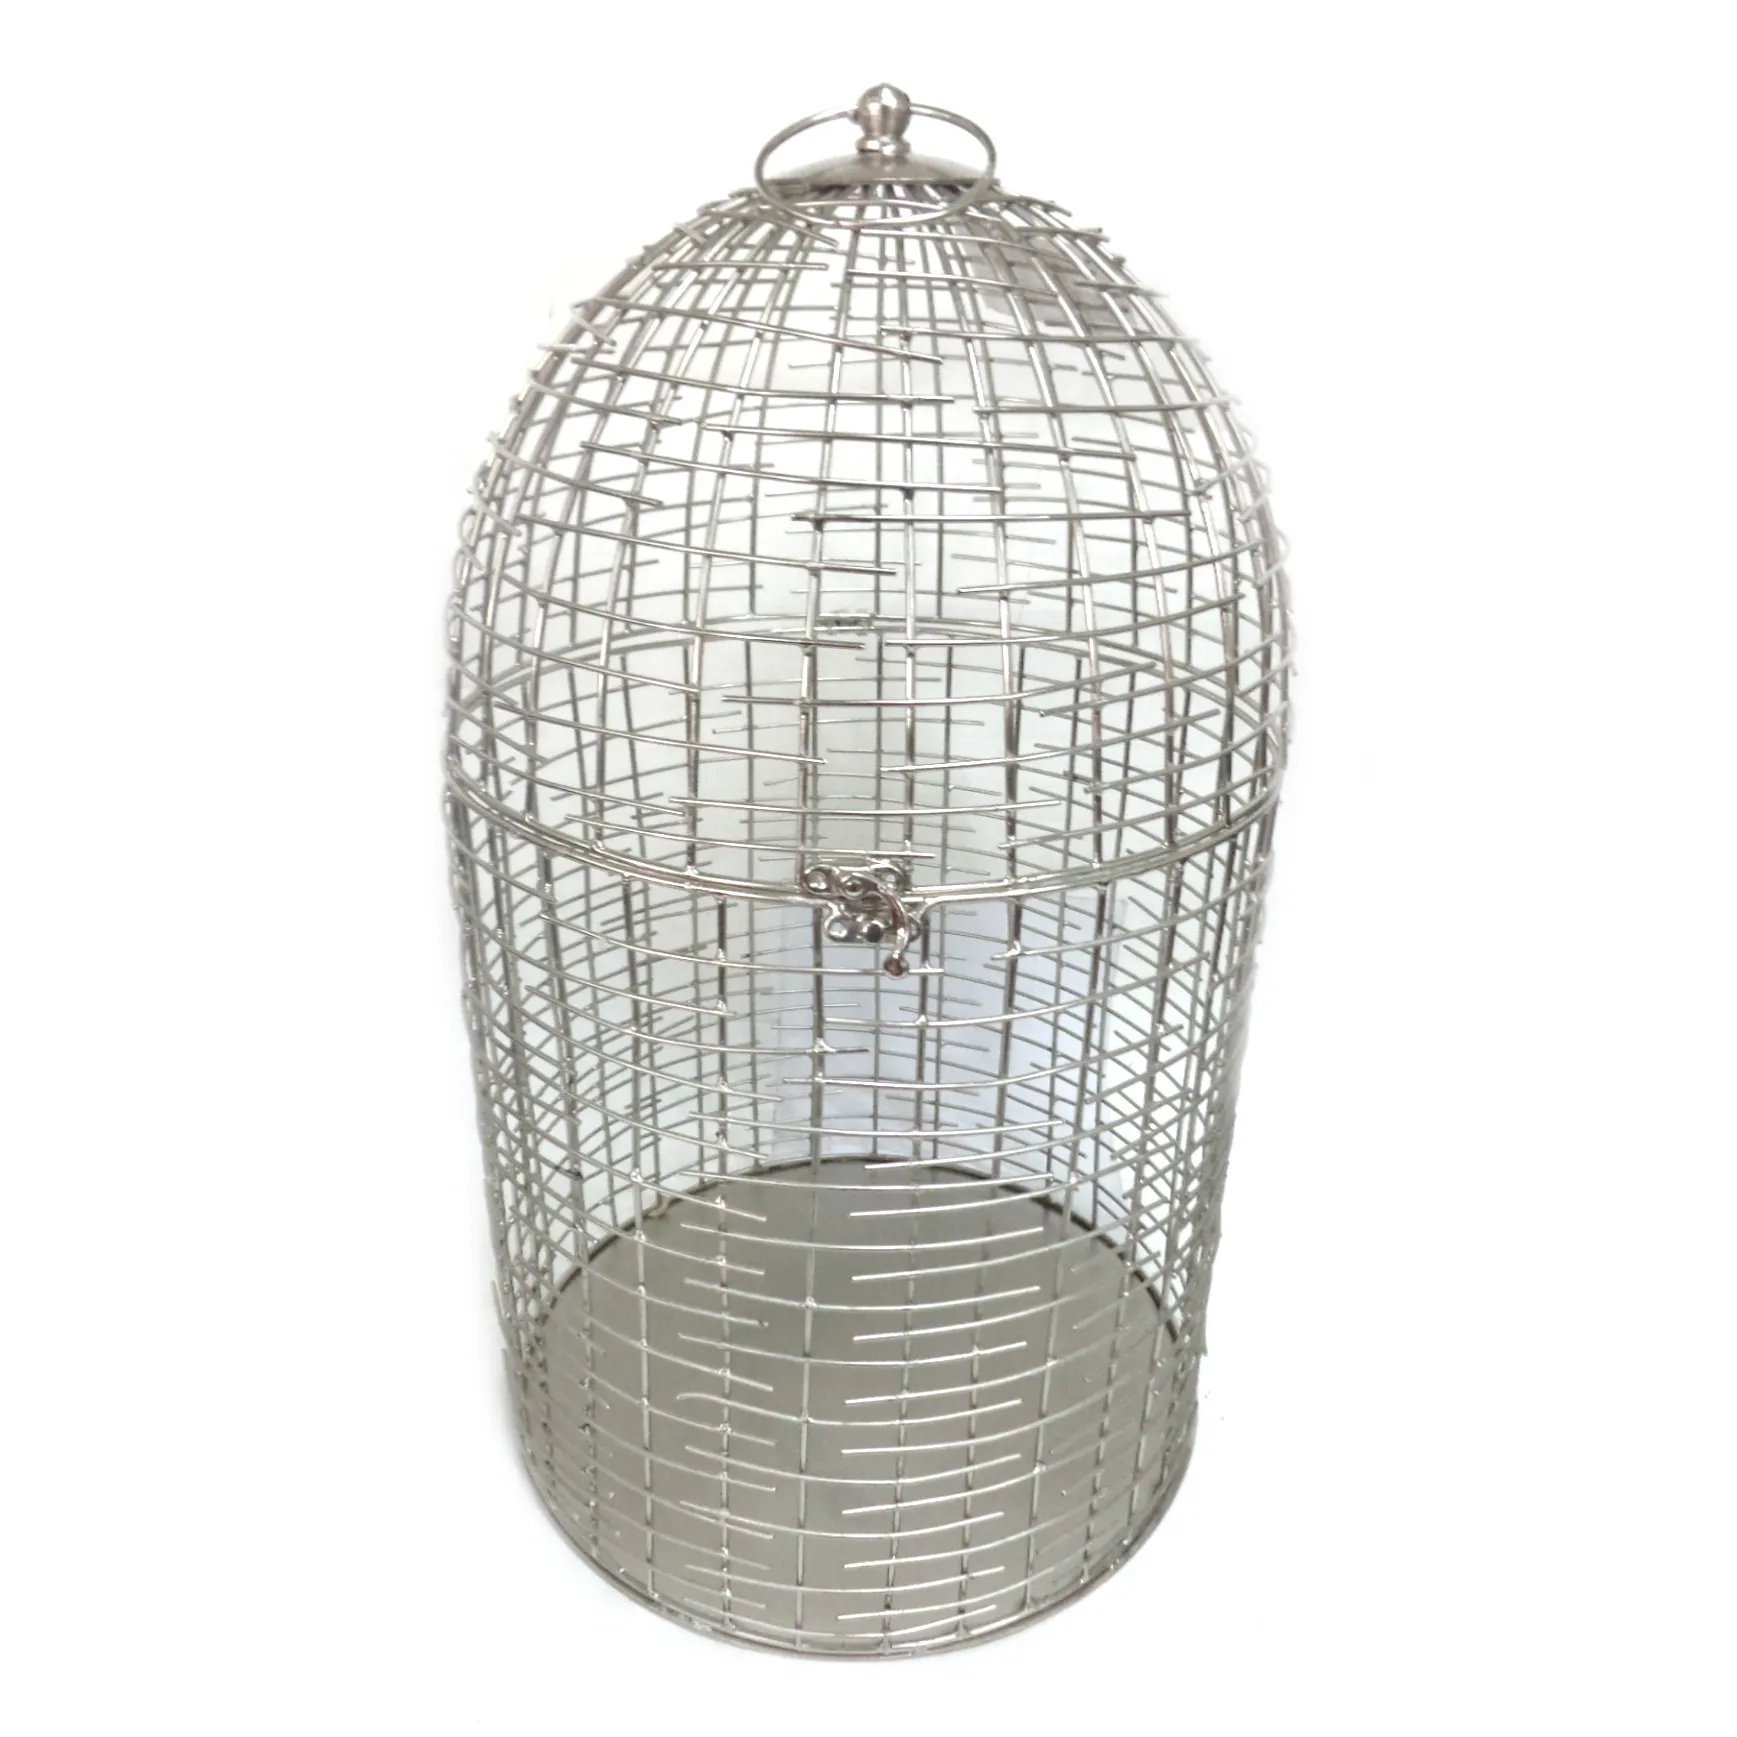 Nuovo arrivo ultimo stile gabbia per uccelli di colore argento Nickel Design classico gabbia per animali domestici per il giardino e la decorazione della casa su misura